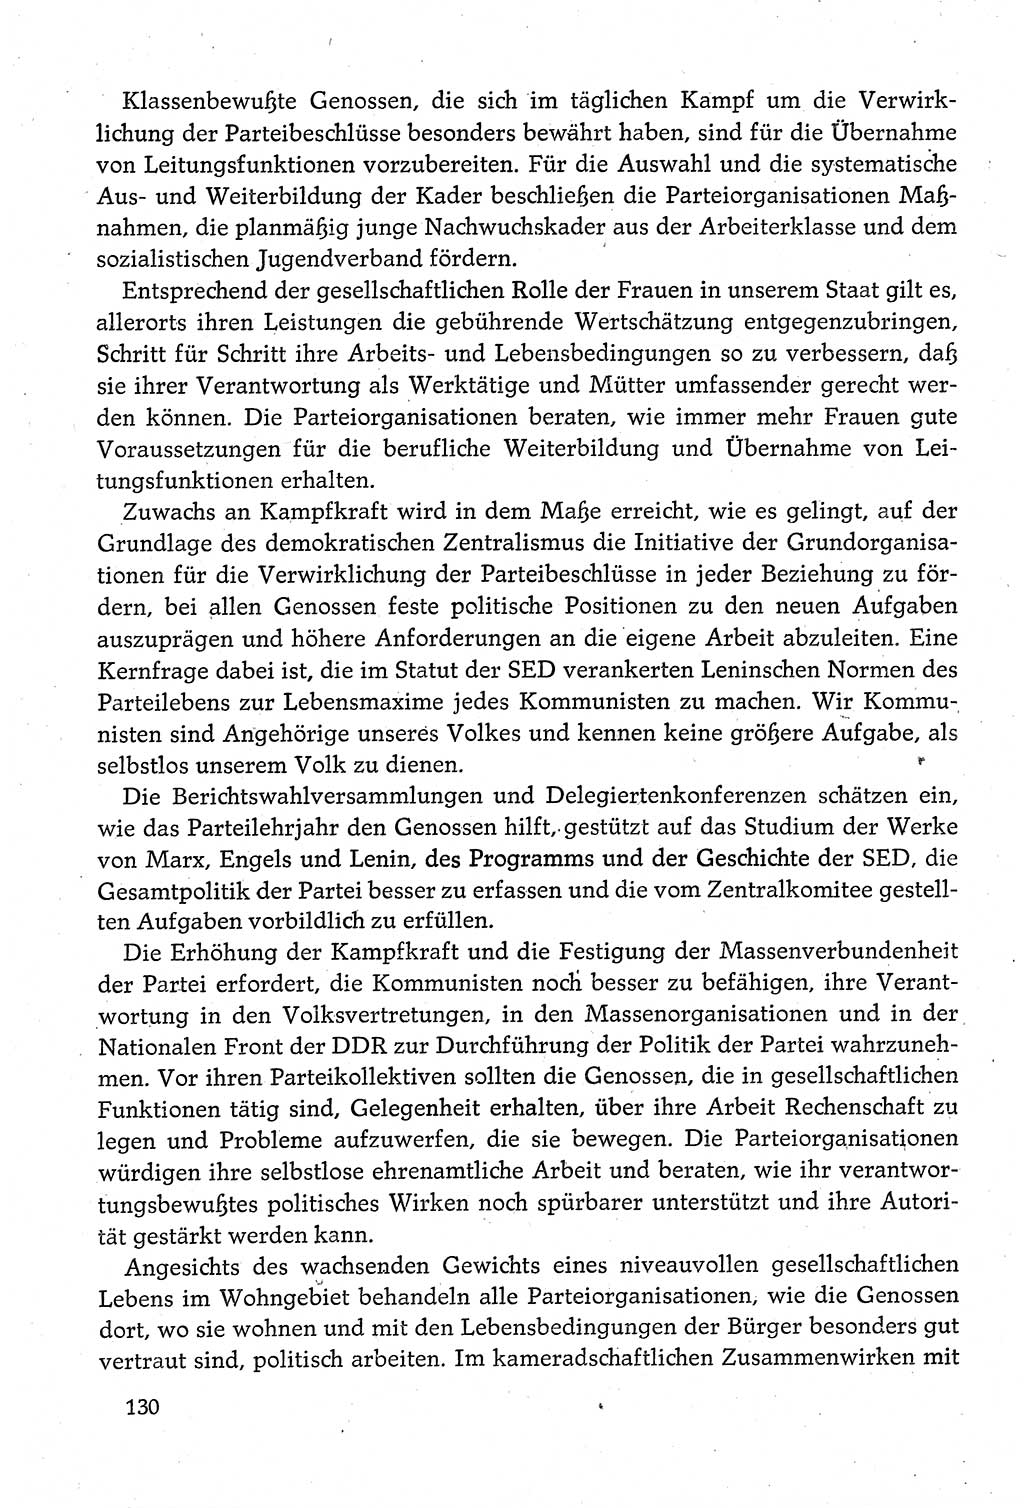 Dokumente der Sozialistischen Einheitspartei Deutschlands (SED) [Deutsche Demokratische Republik (DDR)] 1980-1981, Seite 130 (Dok. SED DDR 1980-1981, S. 130)